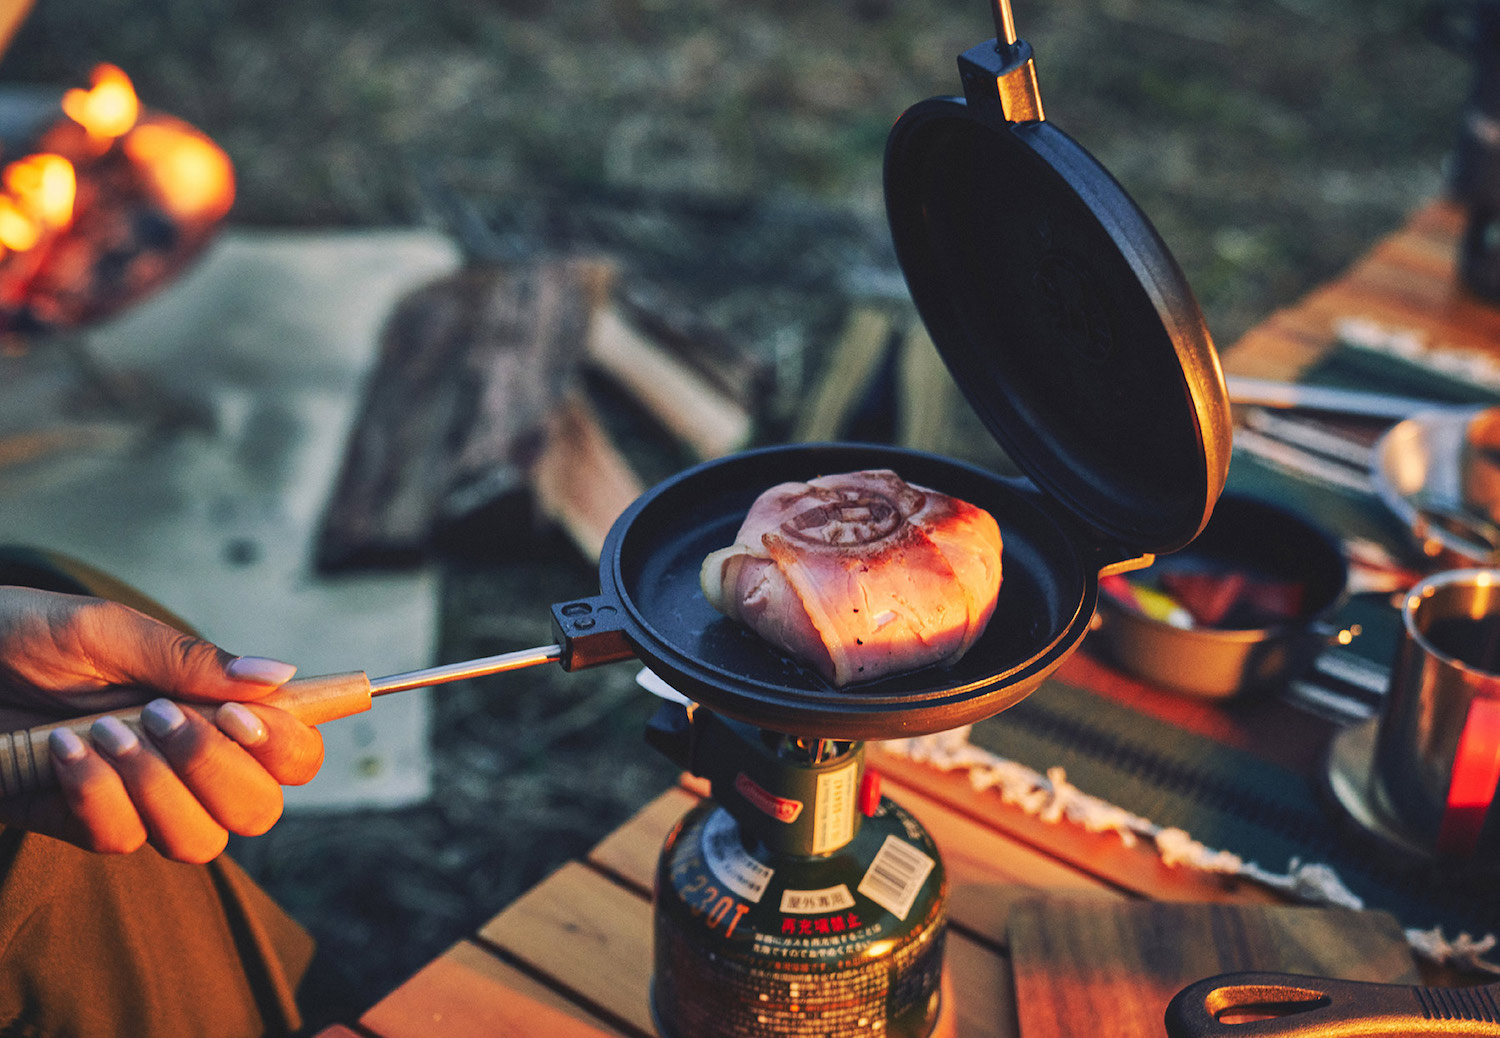 キャンプで多彩な料理が楽しめる コールマン ダブルパンクッカー 登場 調理器具 食器 Be Pal キャンプ アウトドア 自然派生活の情報源ビーパル